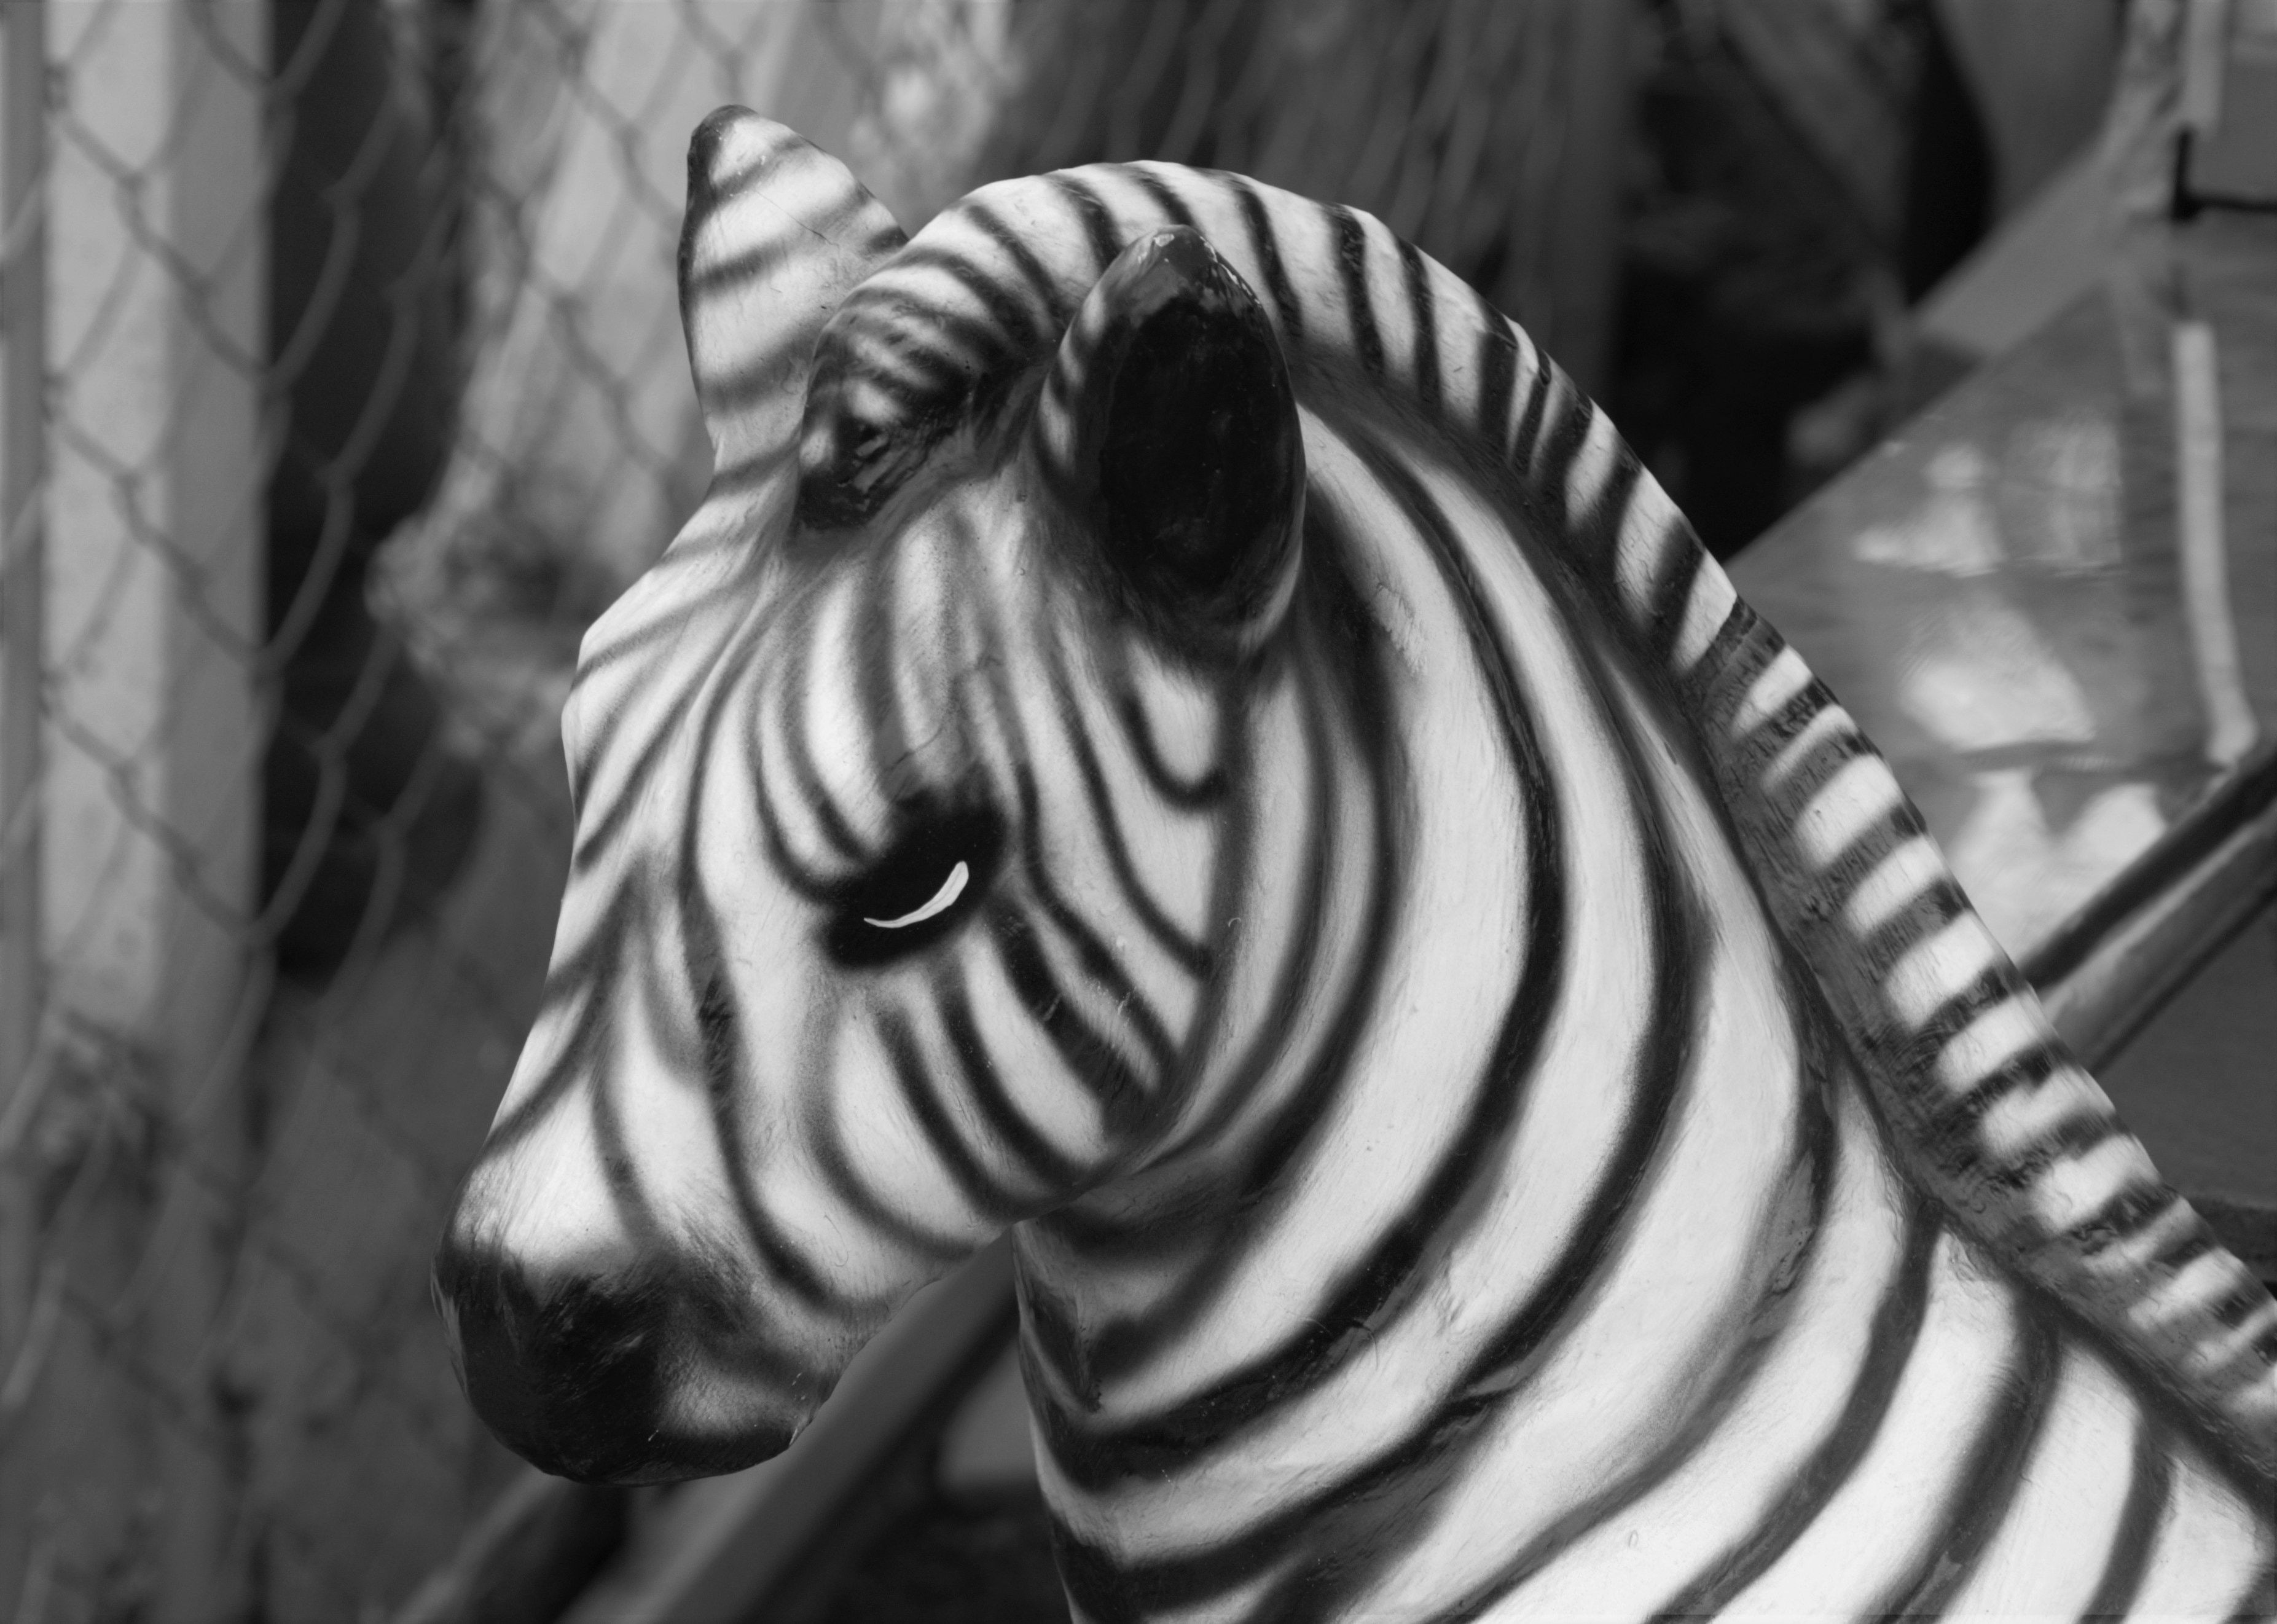 ceramic zebra